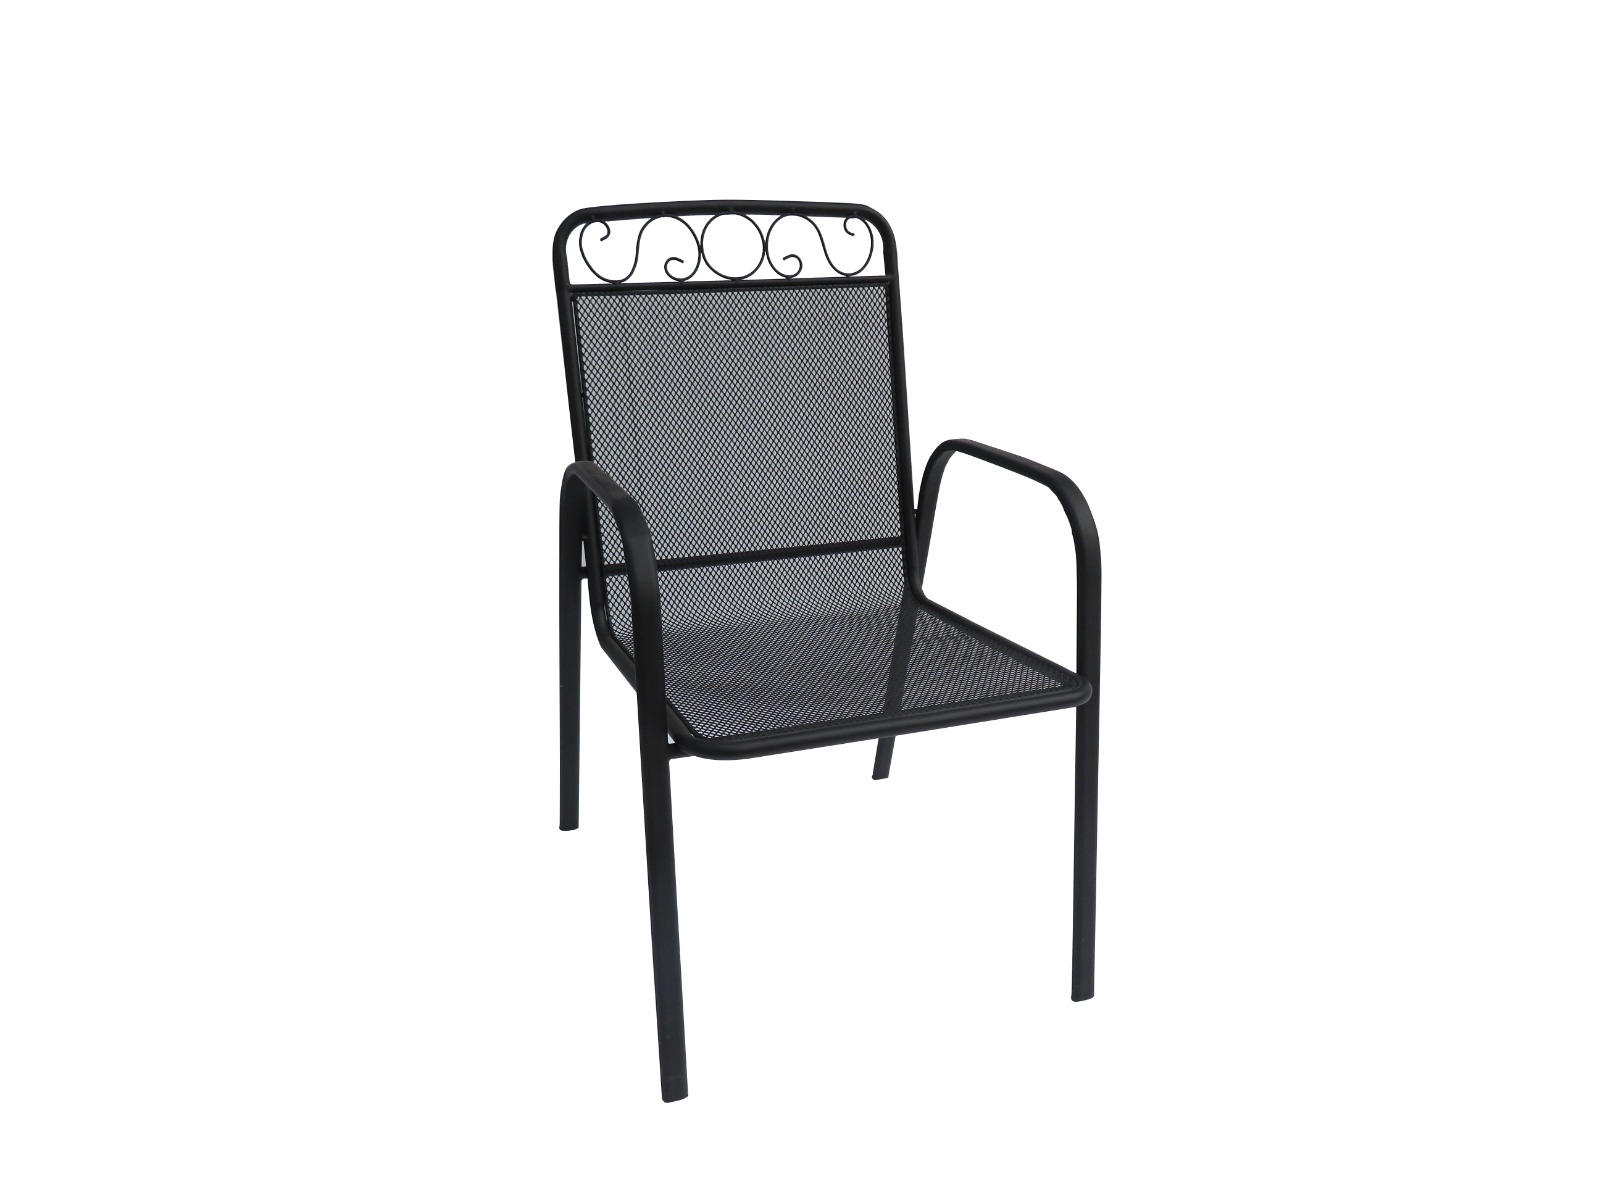 BABU záhradná kovová stolička, čierna